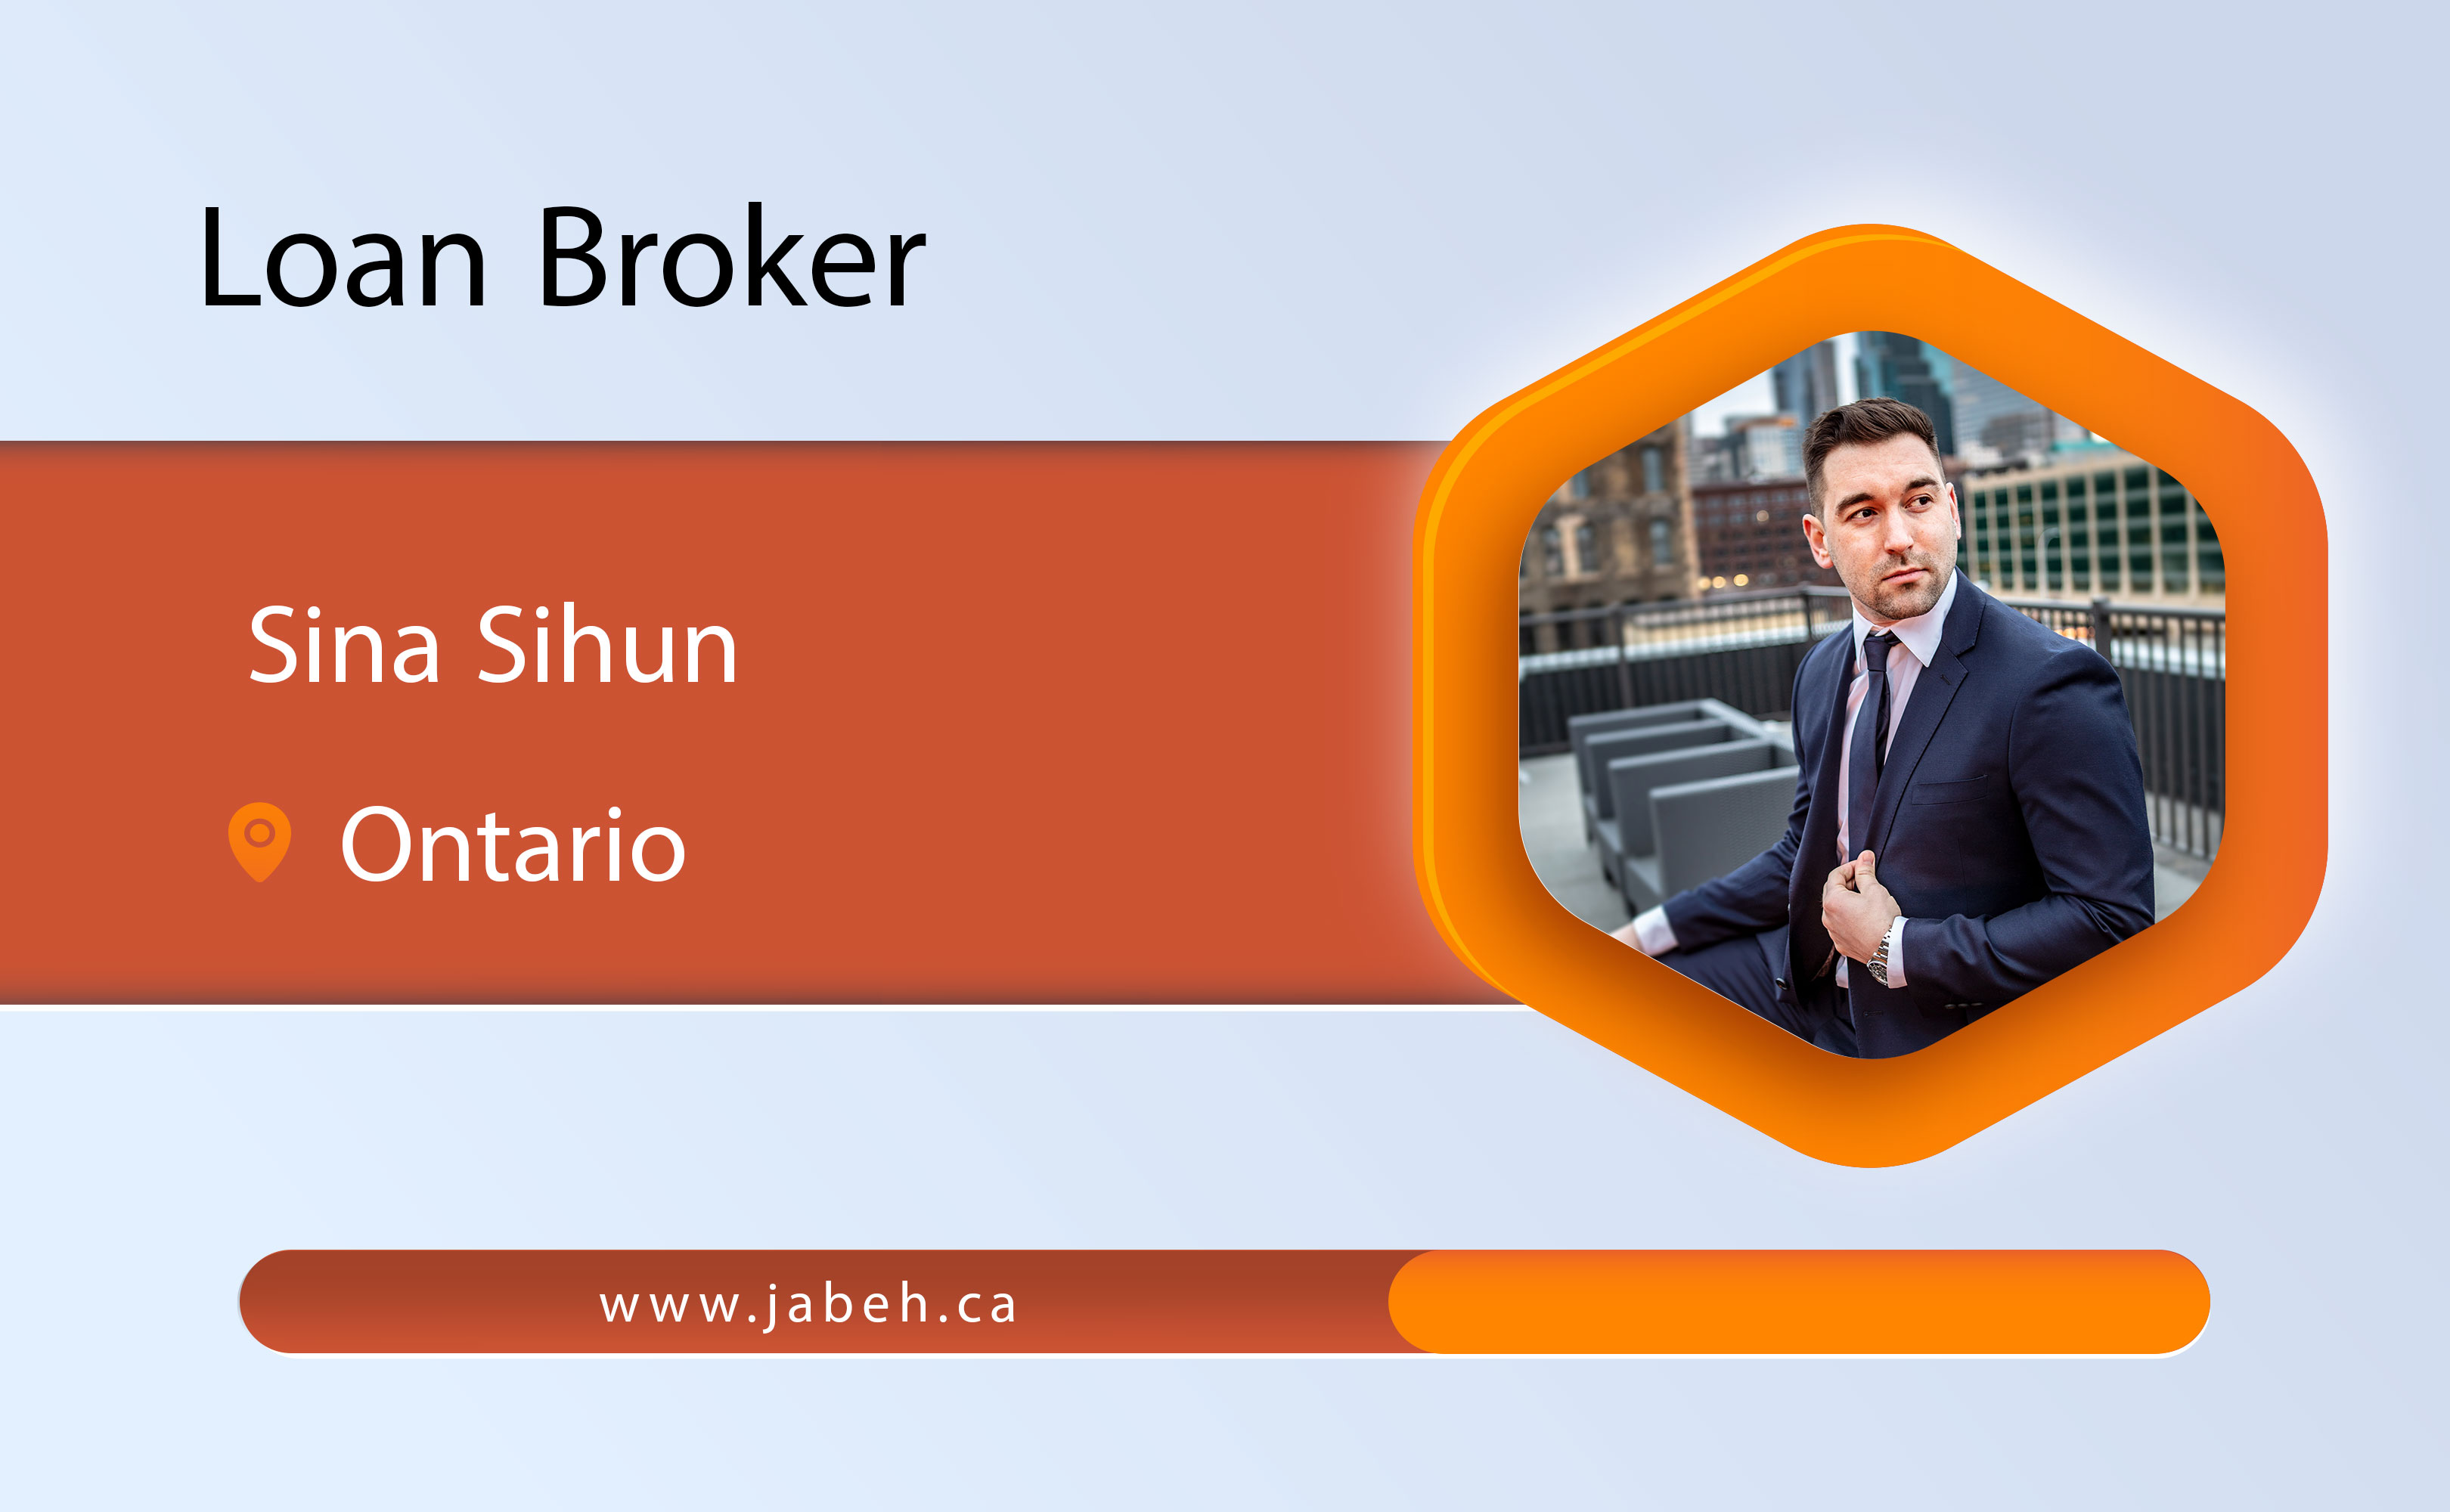 Iranian loan broker Sina Sihun in Ontario